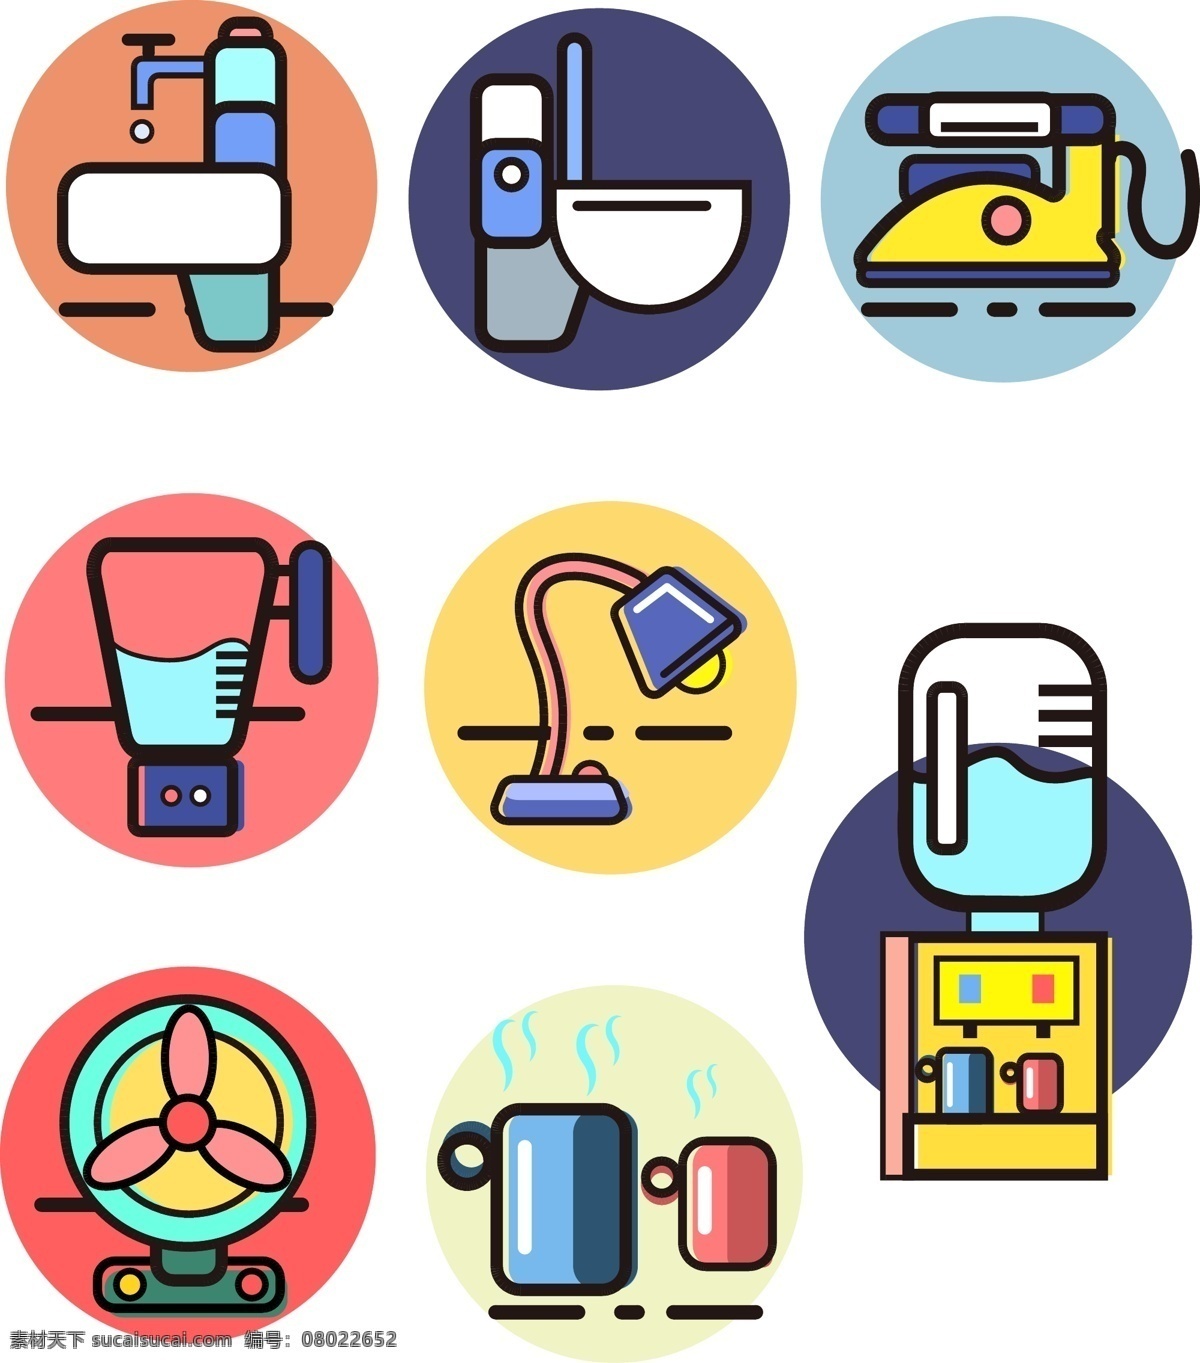 家居用品 卡通 图标 商用 卡通可爱 简约 洗手池 卫生间 饮水机 设施图标